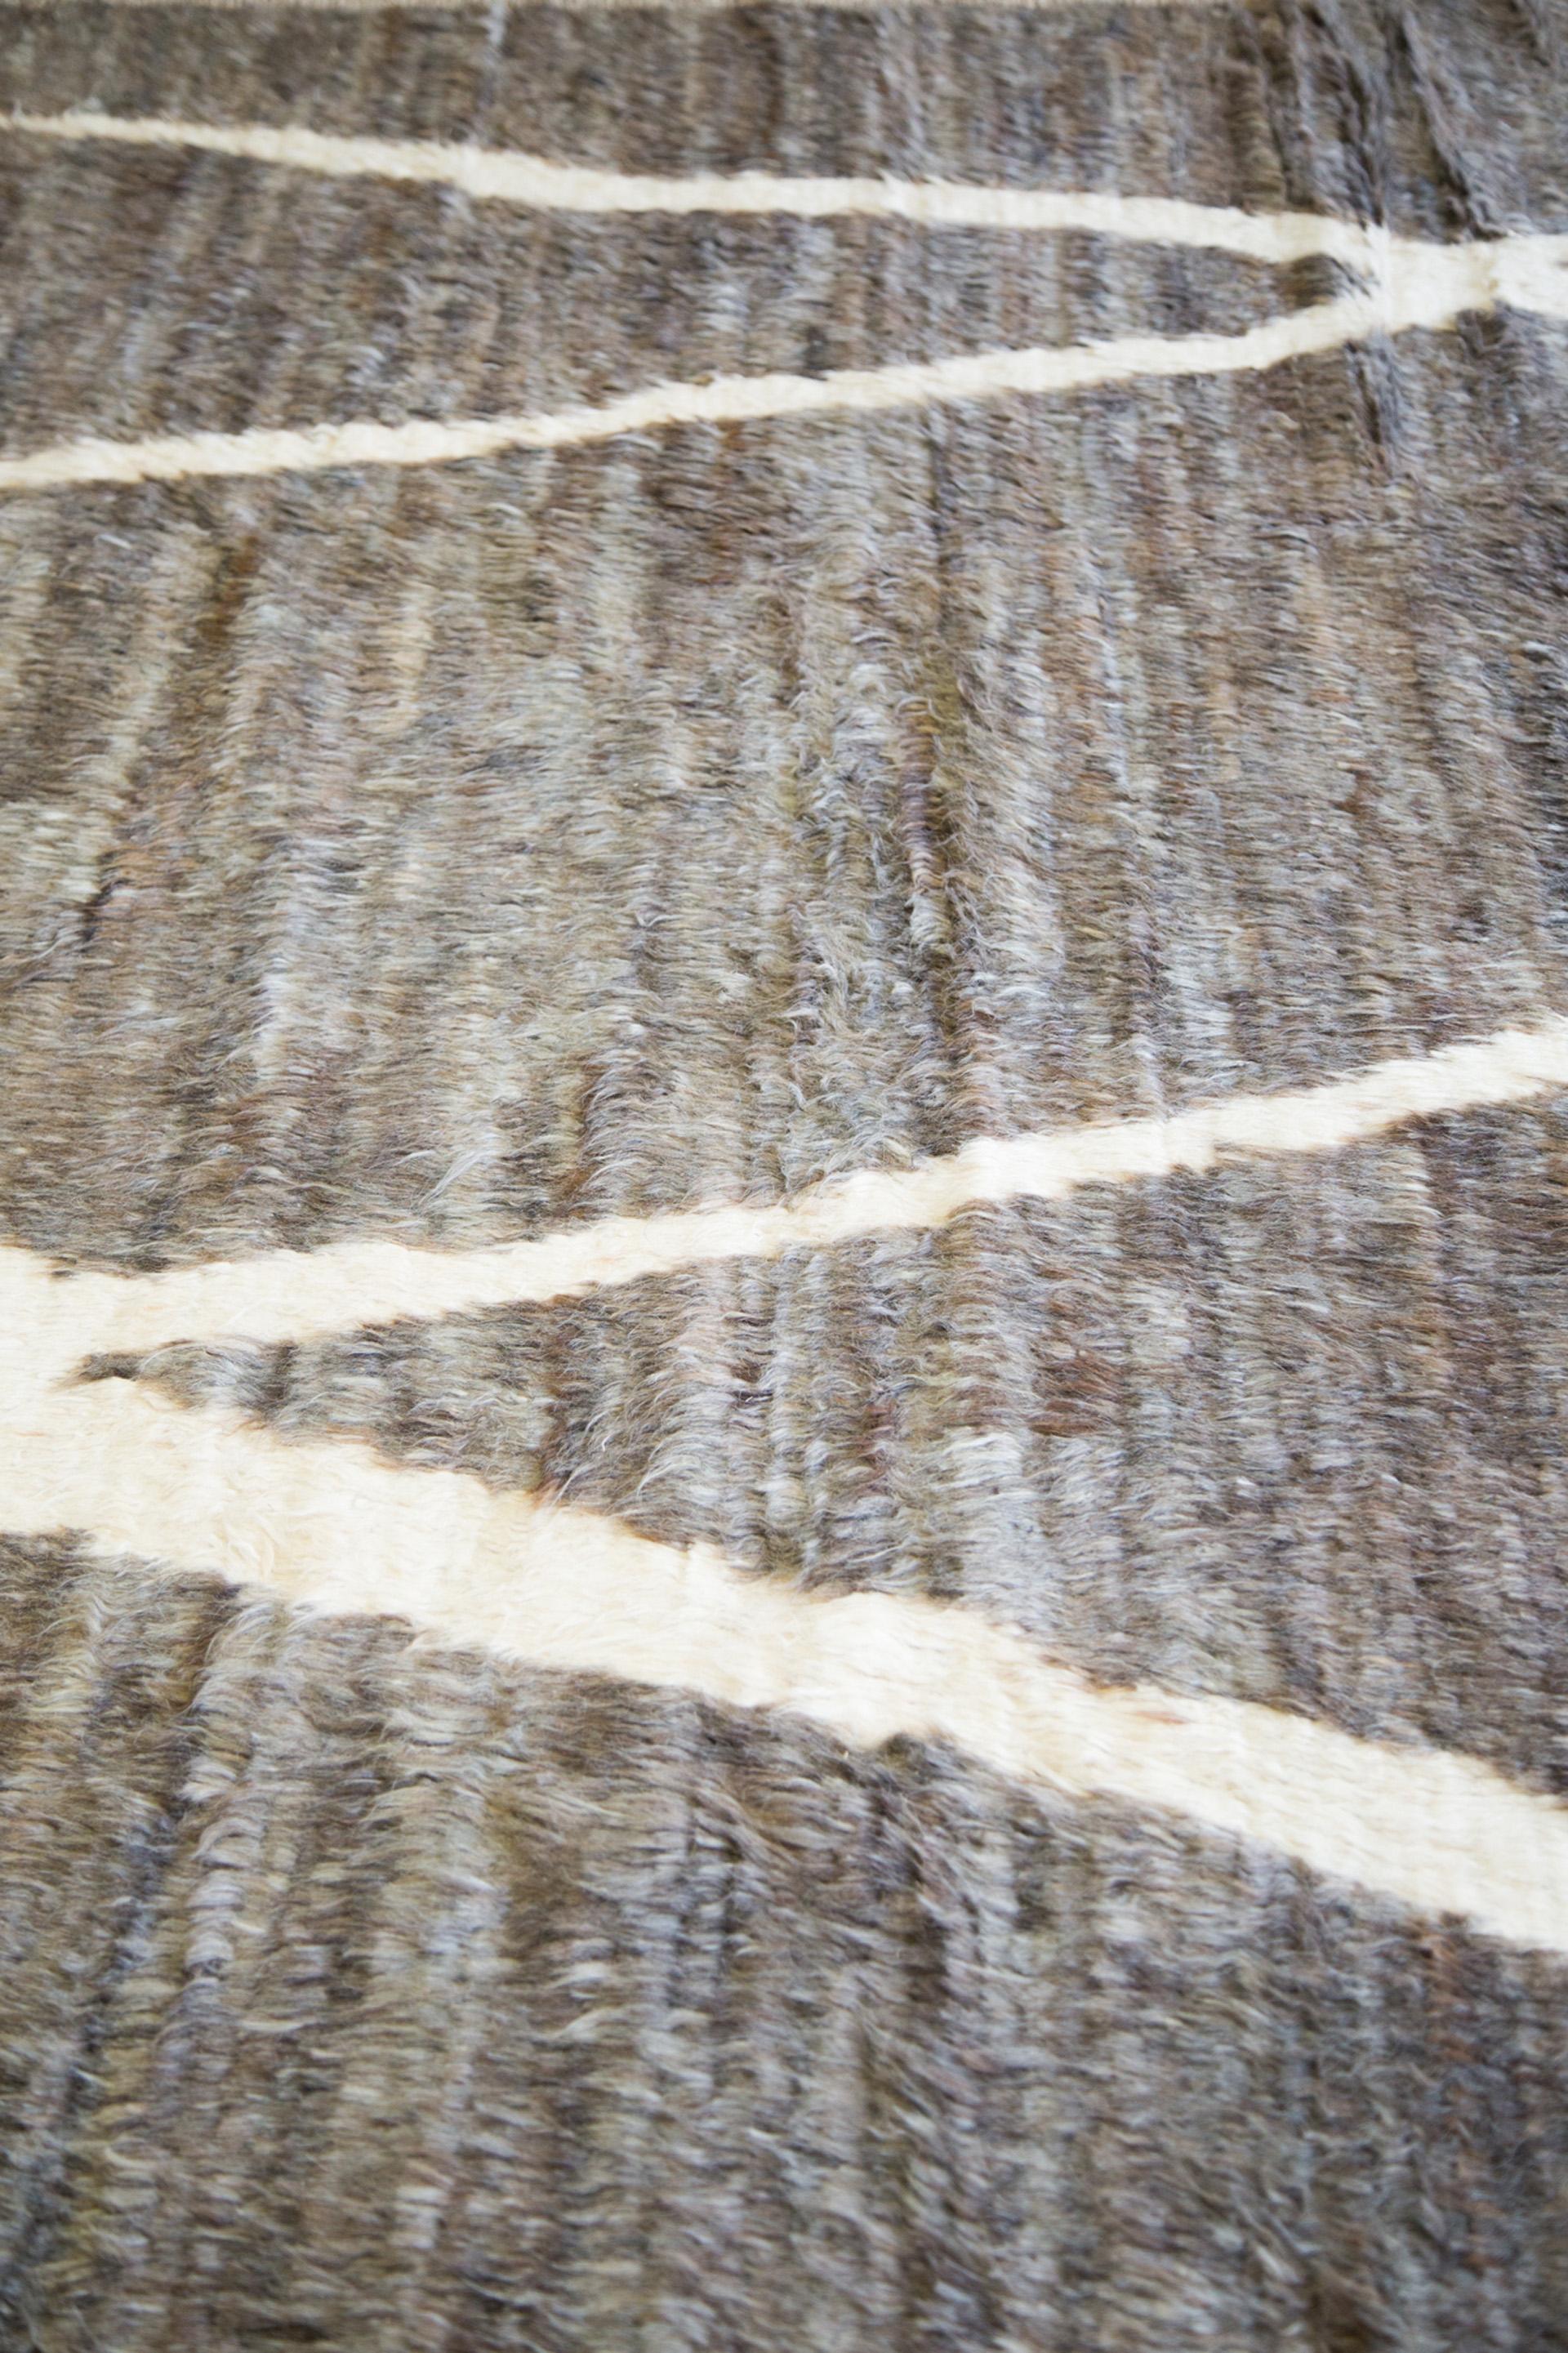 Azilal-Stammesteppiche aus Marokko sind bekannt für ihre handgesponnene Wolle, ihre satten Farben, ihre intuitiven Motive und ihre charmant unregelmäßige Oberfläche. Die Atlas Collection'S von Mehraban umfasst Azilal-Originale und zeitgenössische